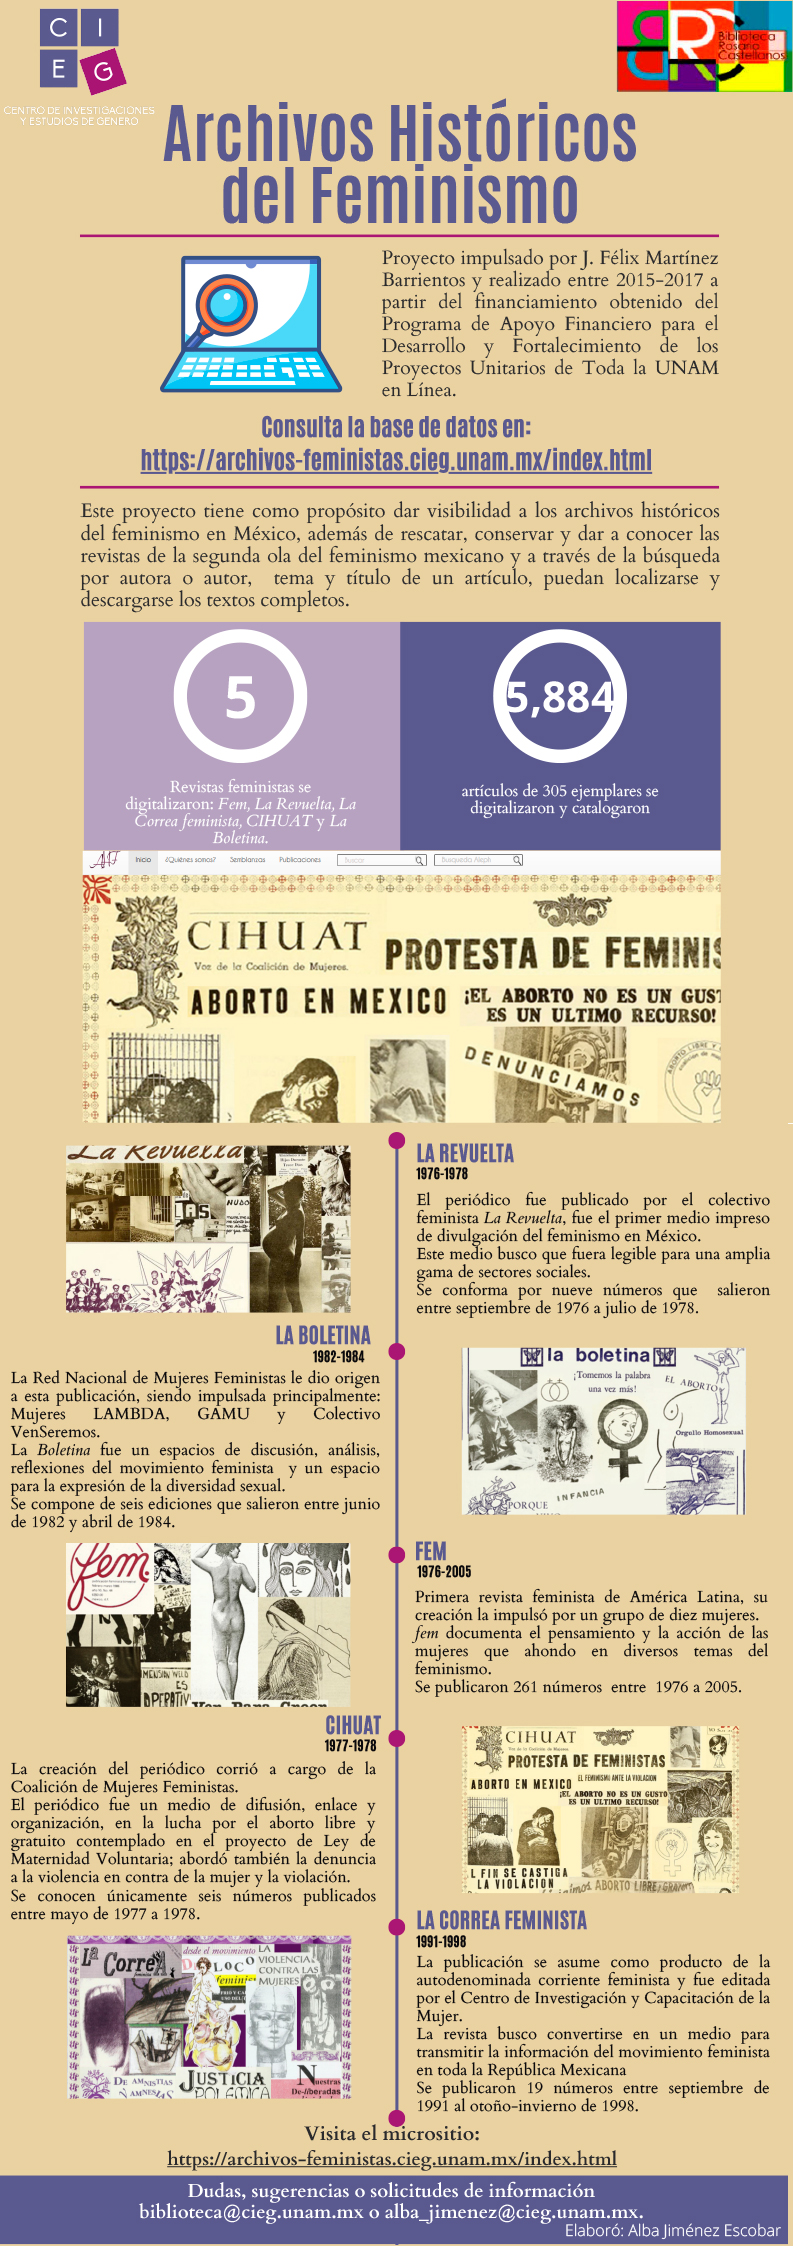 Archivos históricos del feminismo